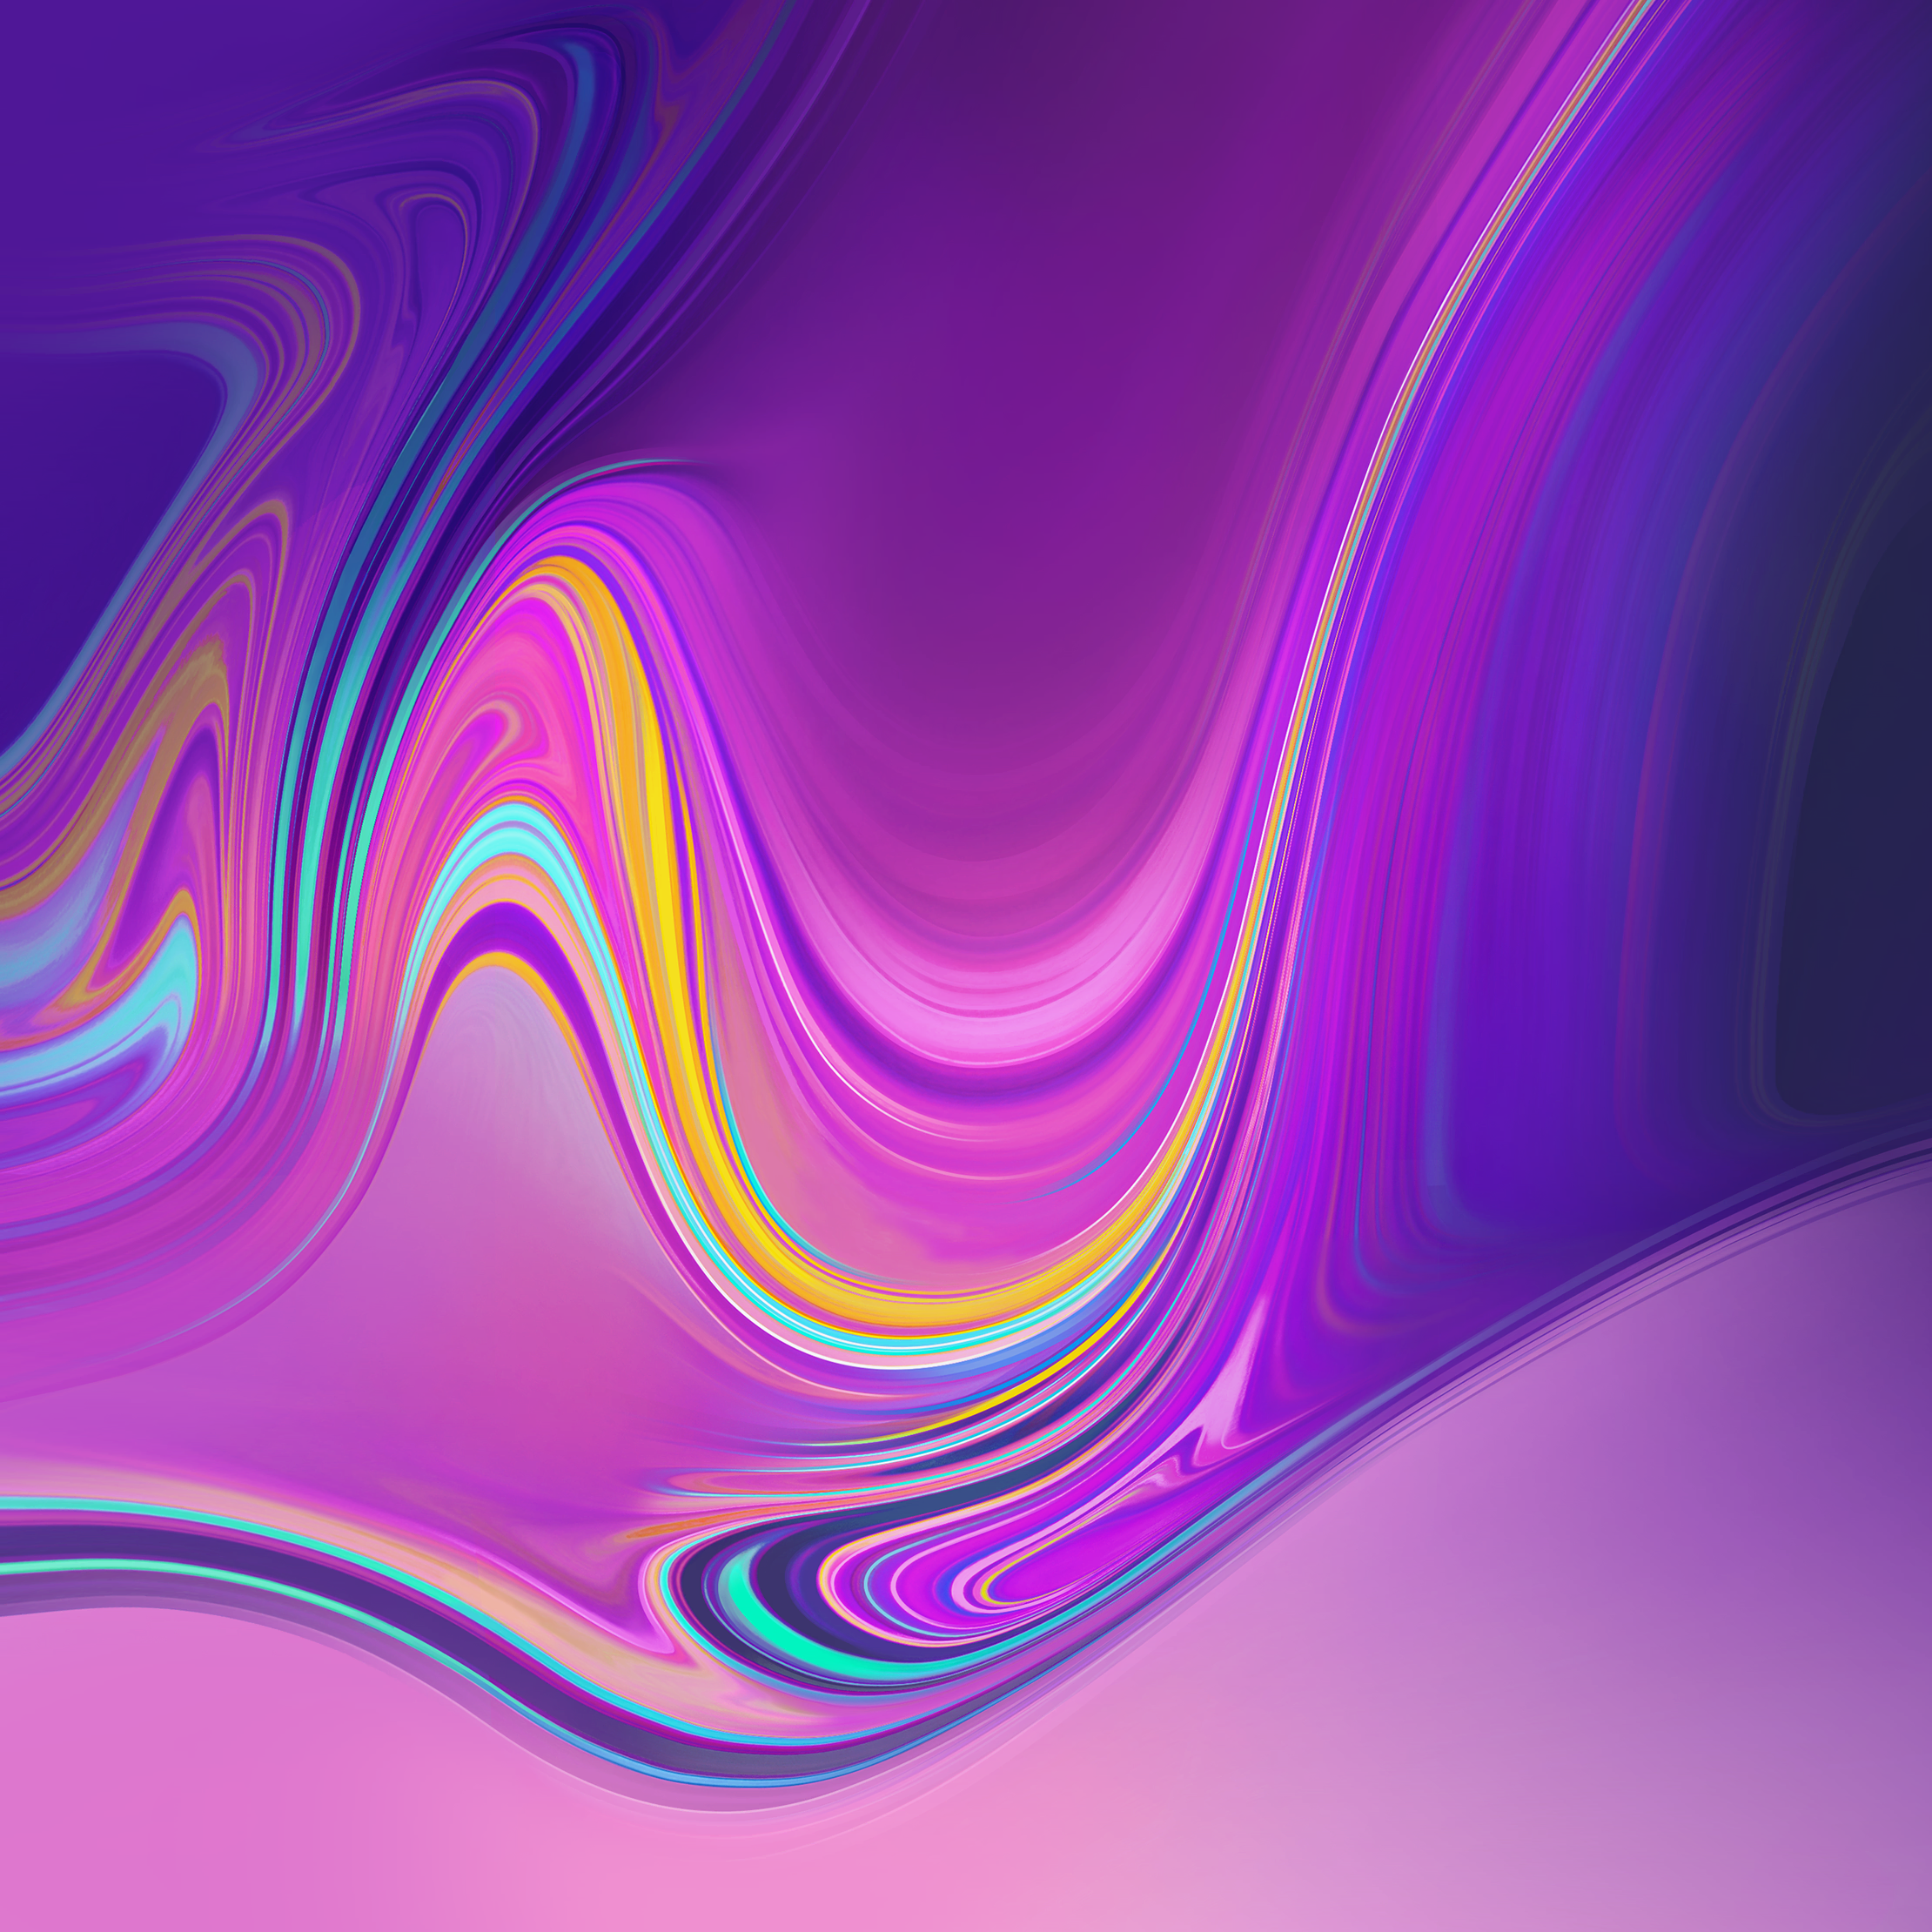 samsung a7 wallpaper,purple,blue,violet,fractal art,pink